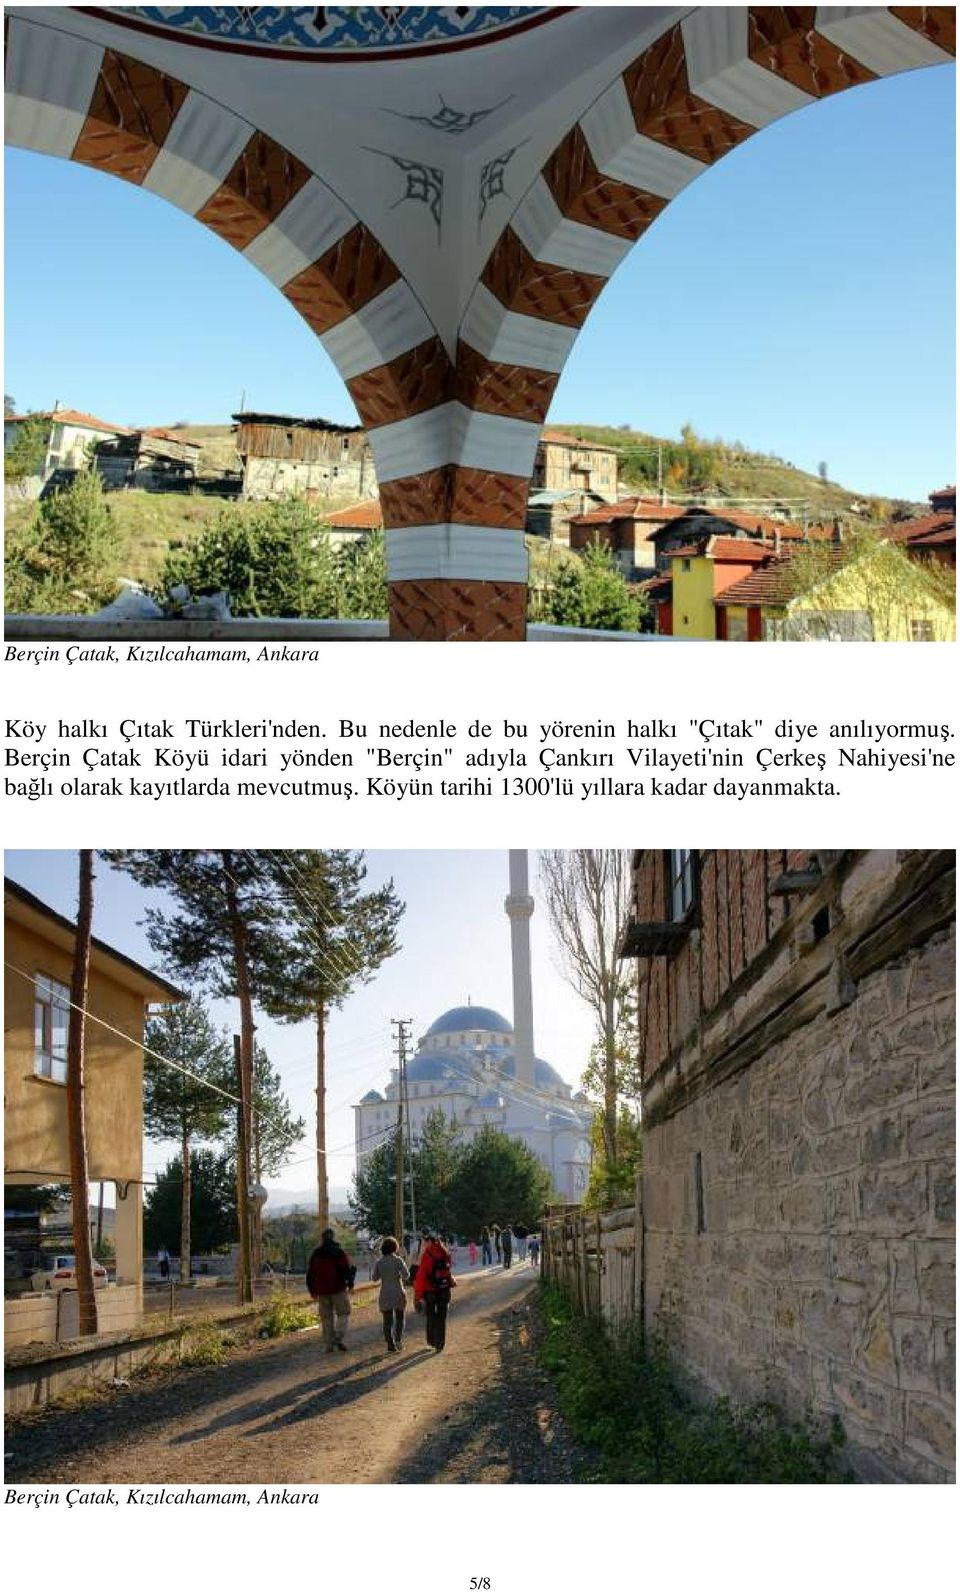 Berçin Çatak Köyü idari yönden "Berçin" adıyla Çankırı Vilayeti'nin Çerkeş